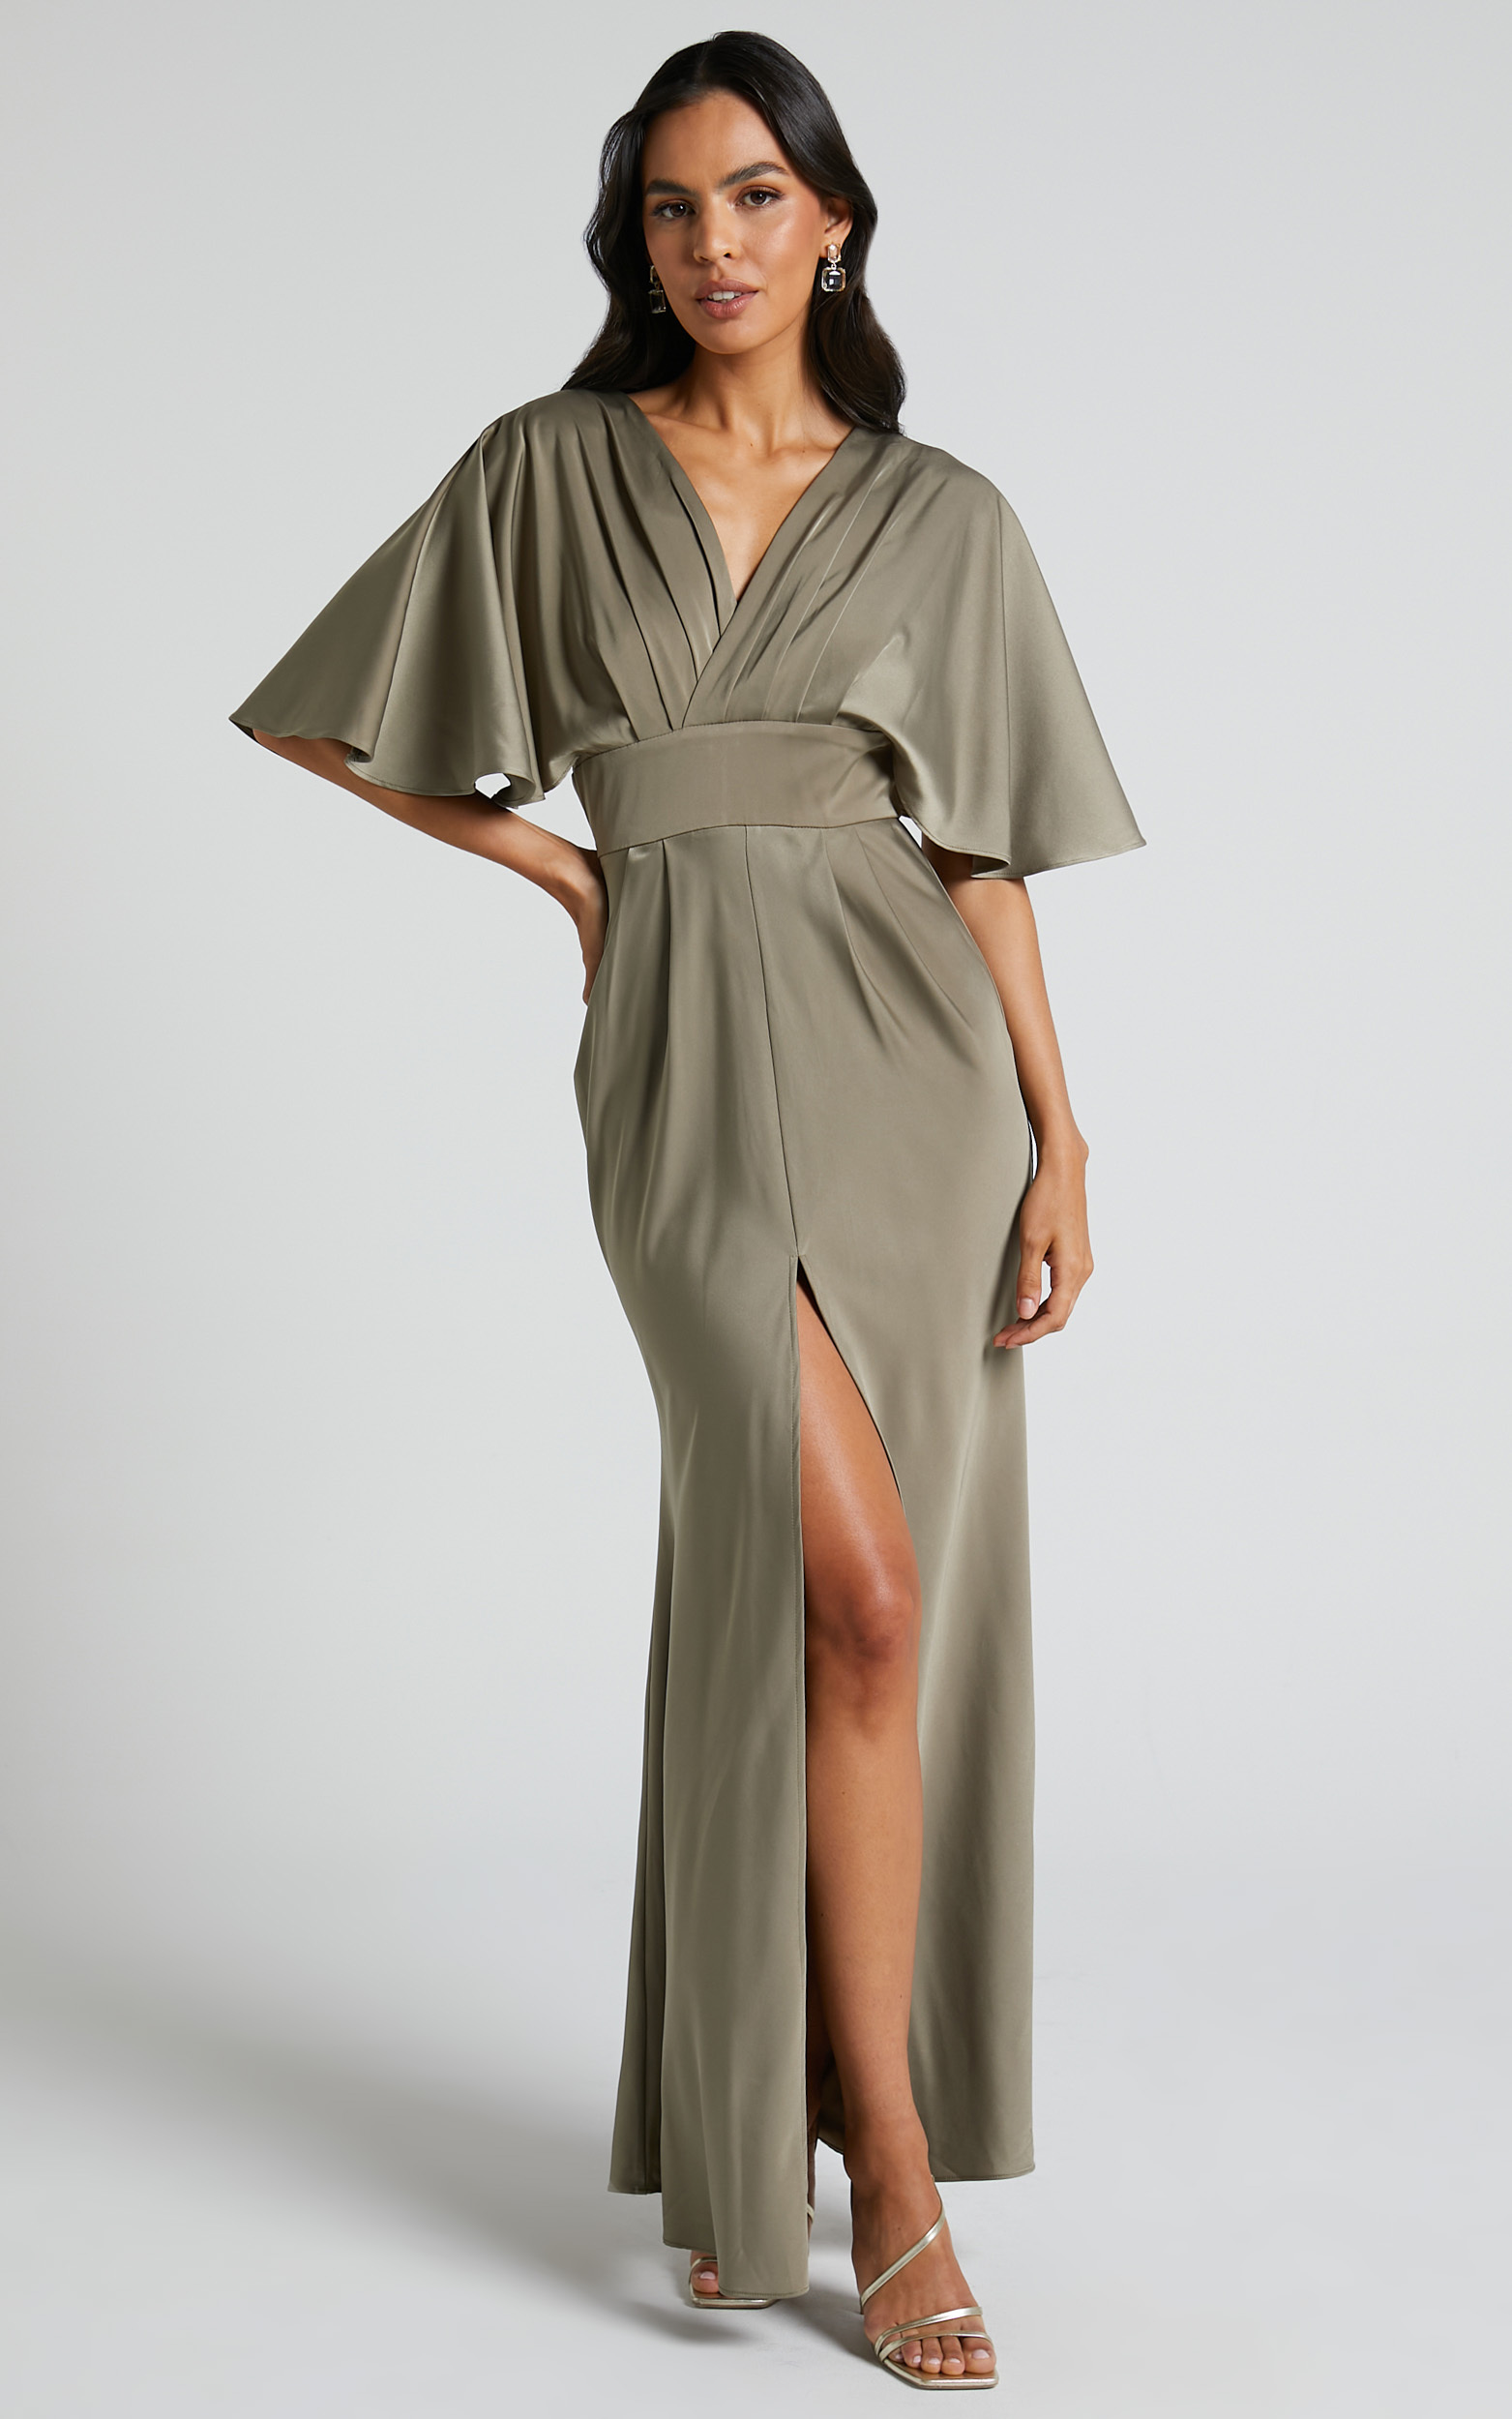 Gemalyn Maxi Dress - Angel Sleeve V Neck Split Dress in Olive - 04, GRN1, hi-res image number null